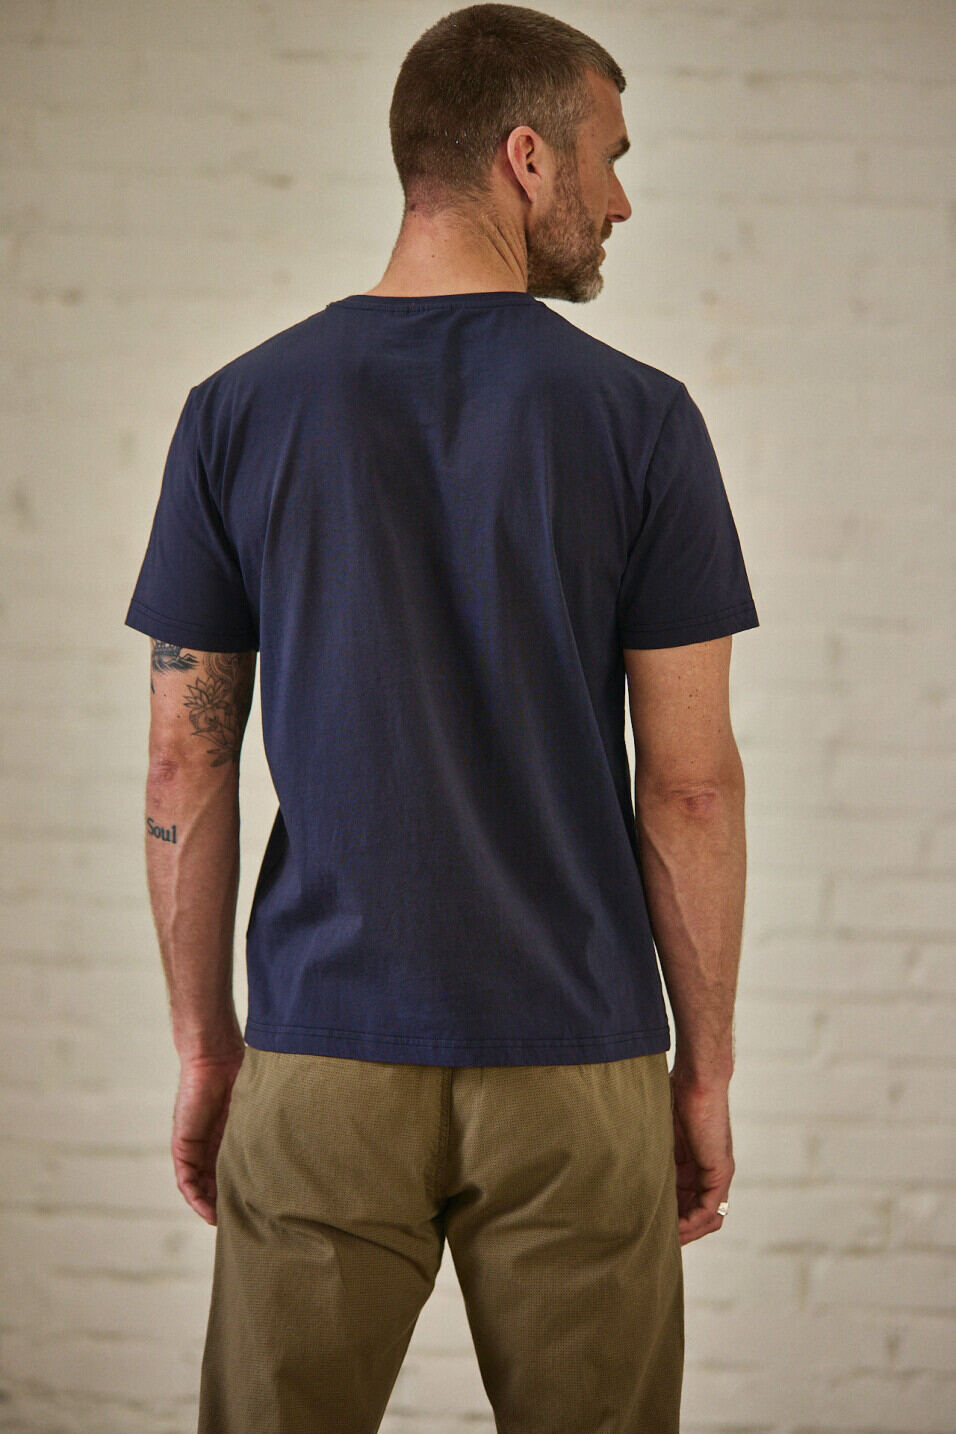 T-shirt manches courtes Homme Ivander Crew Anthra | Freeman T. Porter